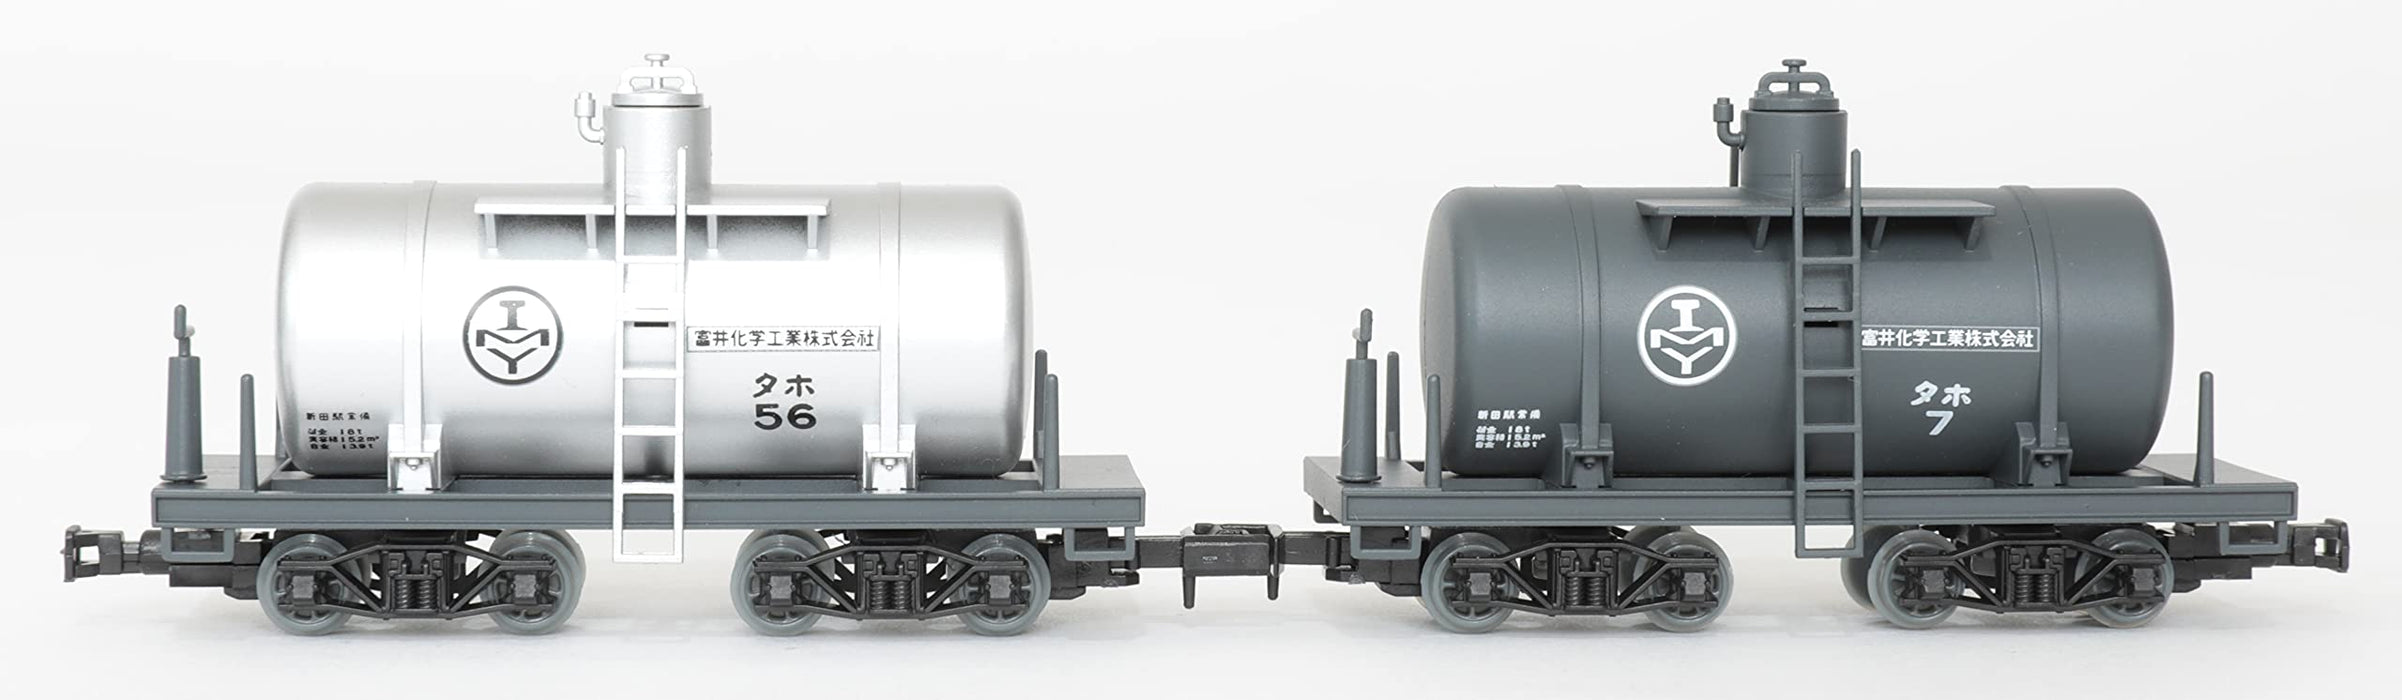 Tomytec Railway Collection Nekoya Line Kleiner Kesselwagen 2-Wagen-Set Limitierte Produktion Dioramazubehör